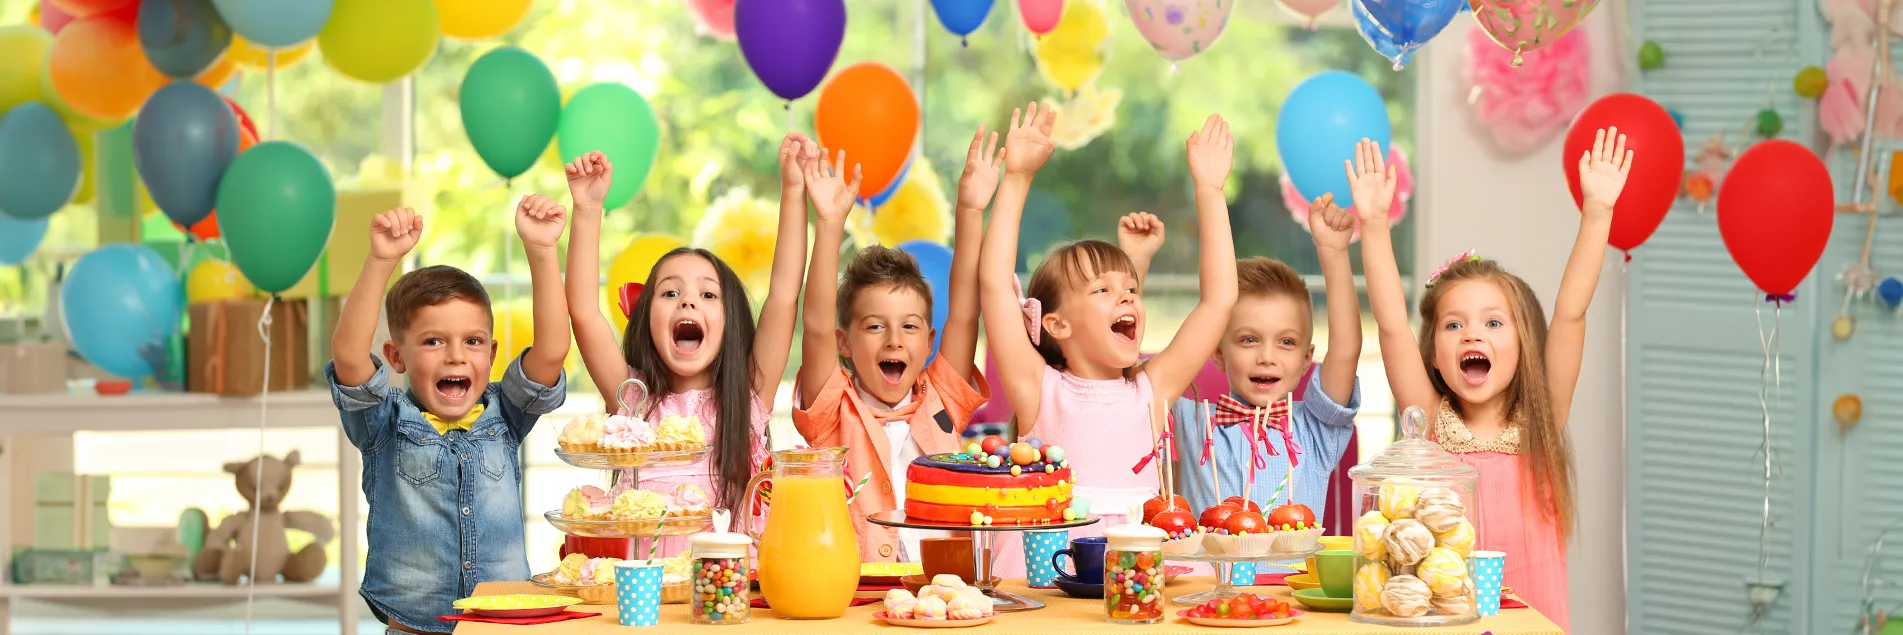 Auf dem Bild sind mehrere Kinder, die sich über die geschmückte Party freuen, vor allem über die Luftballons.